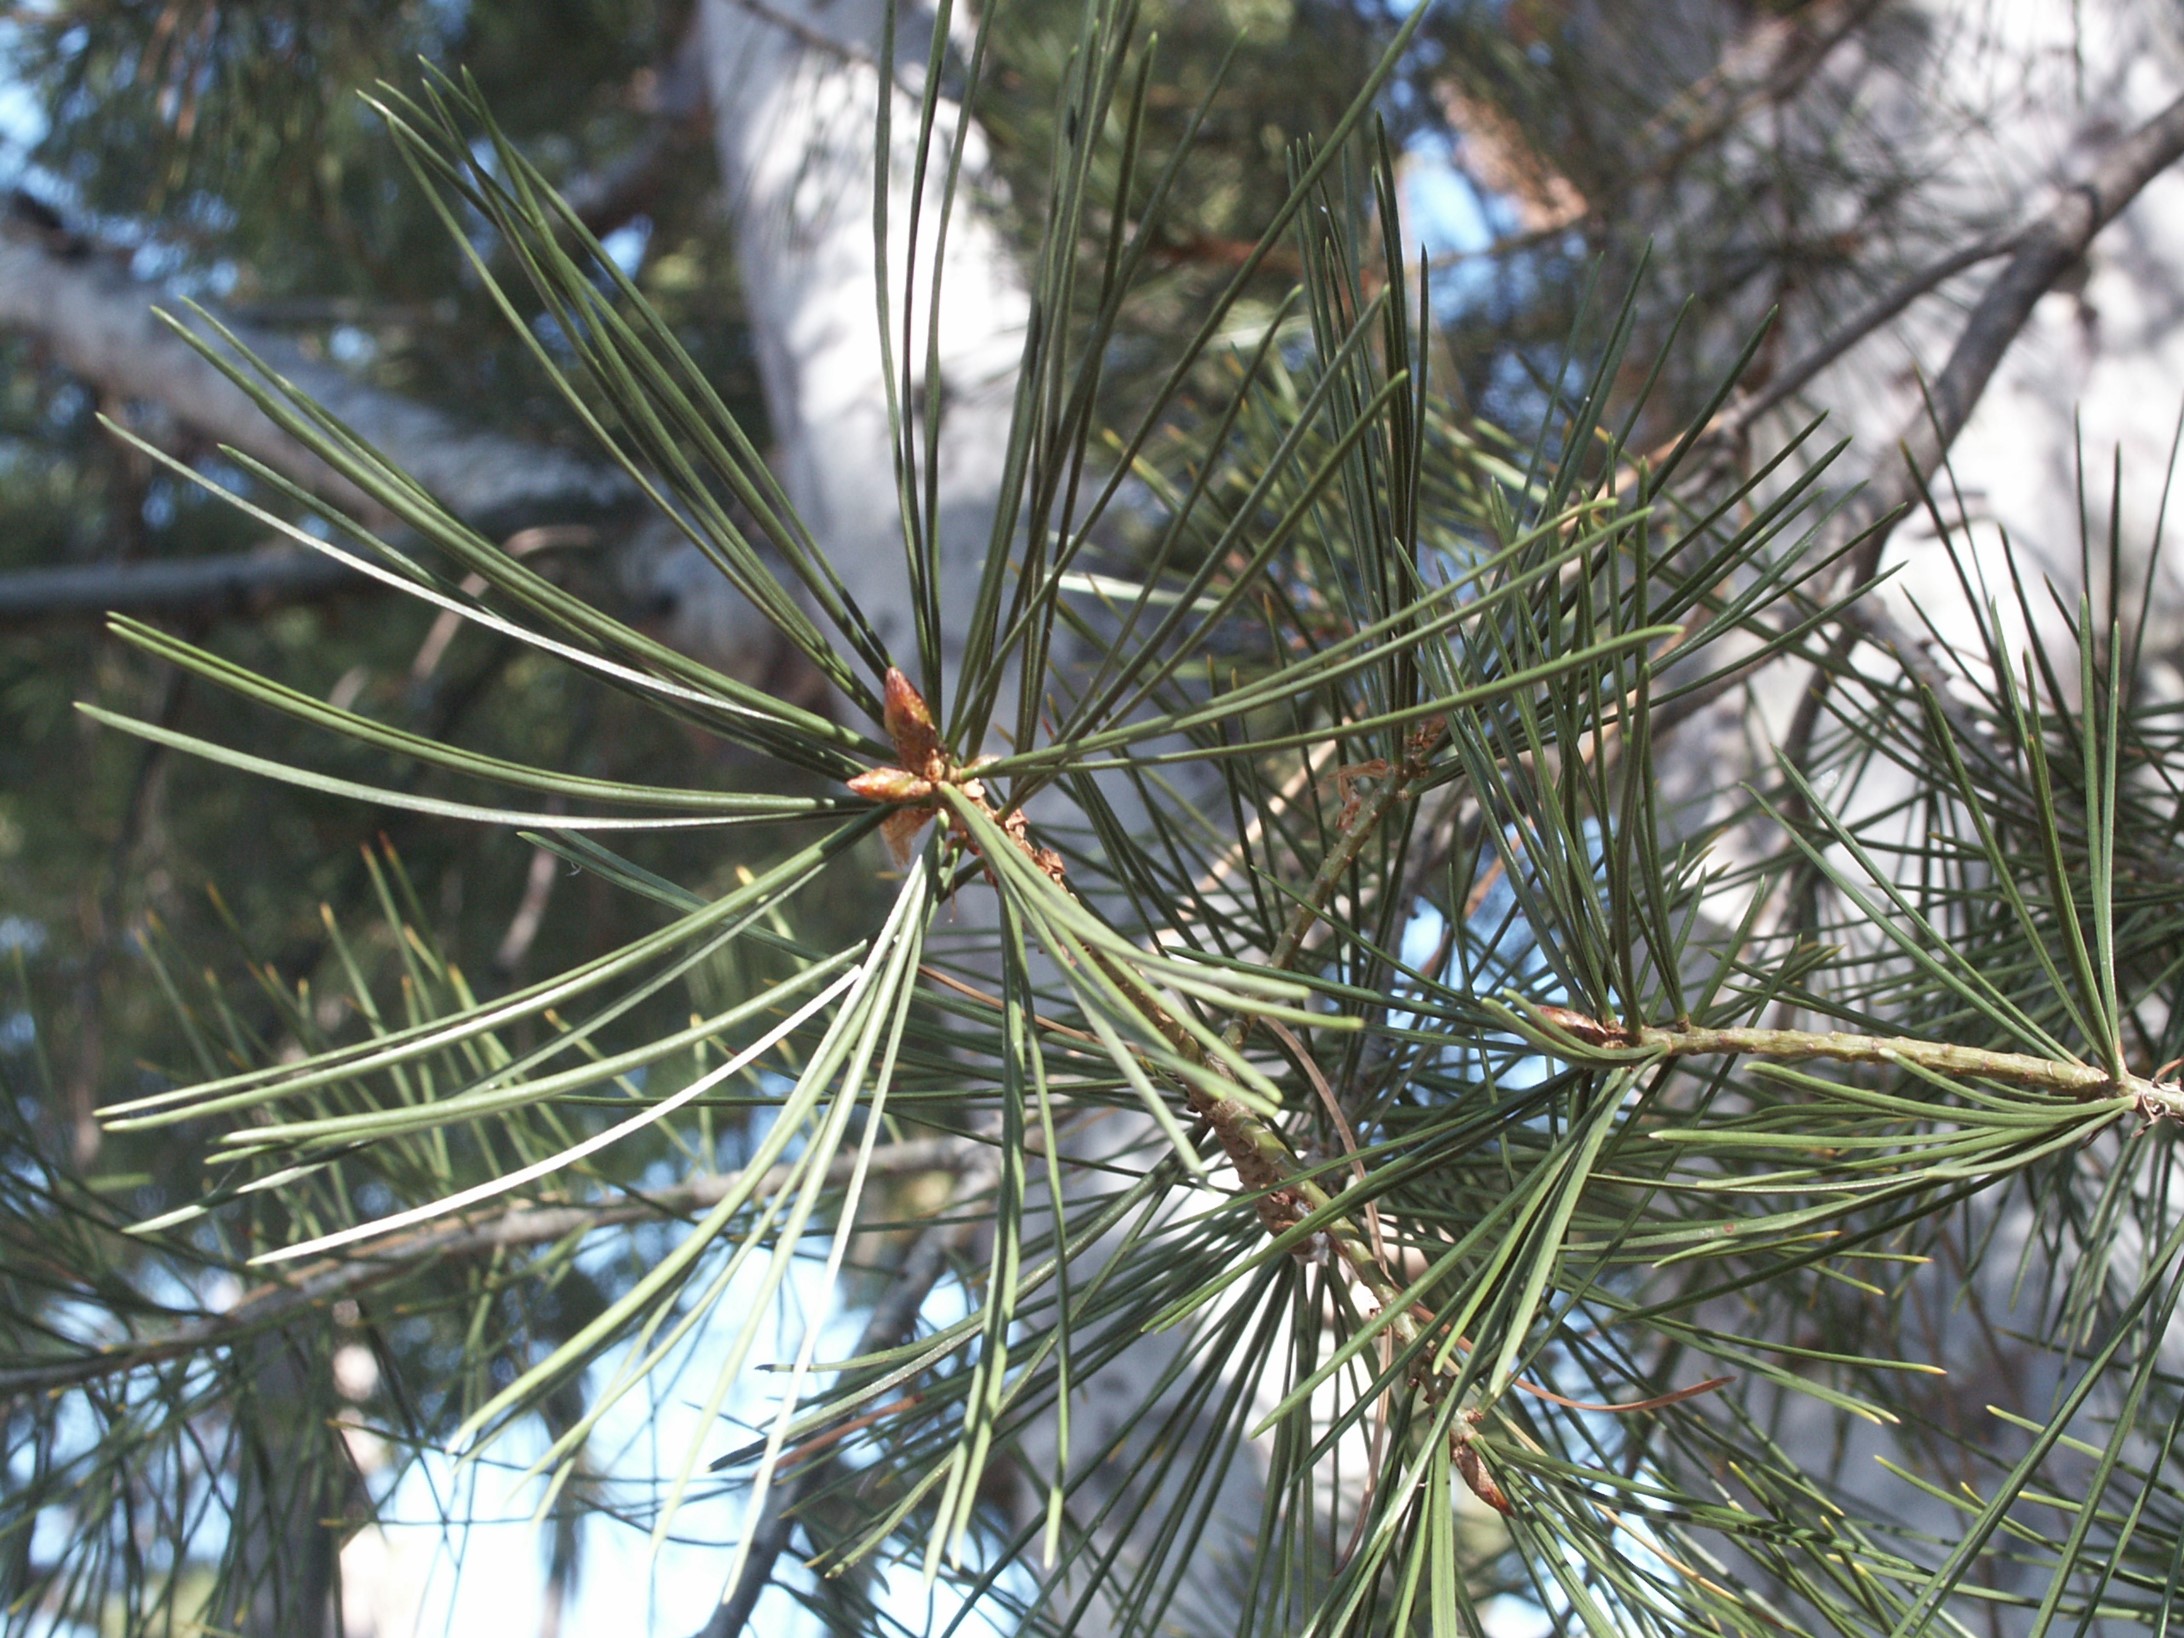 Lacebark Pine needles